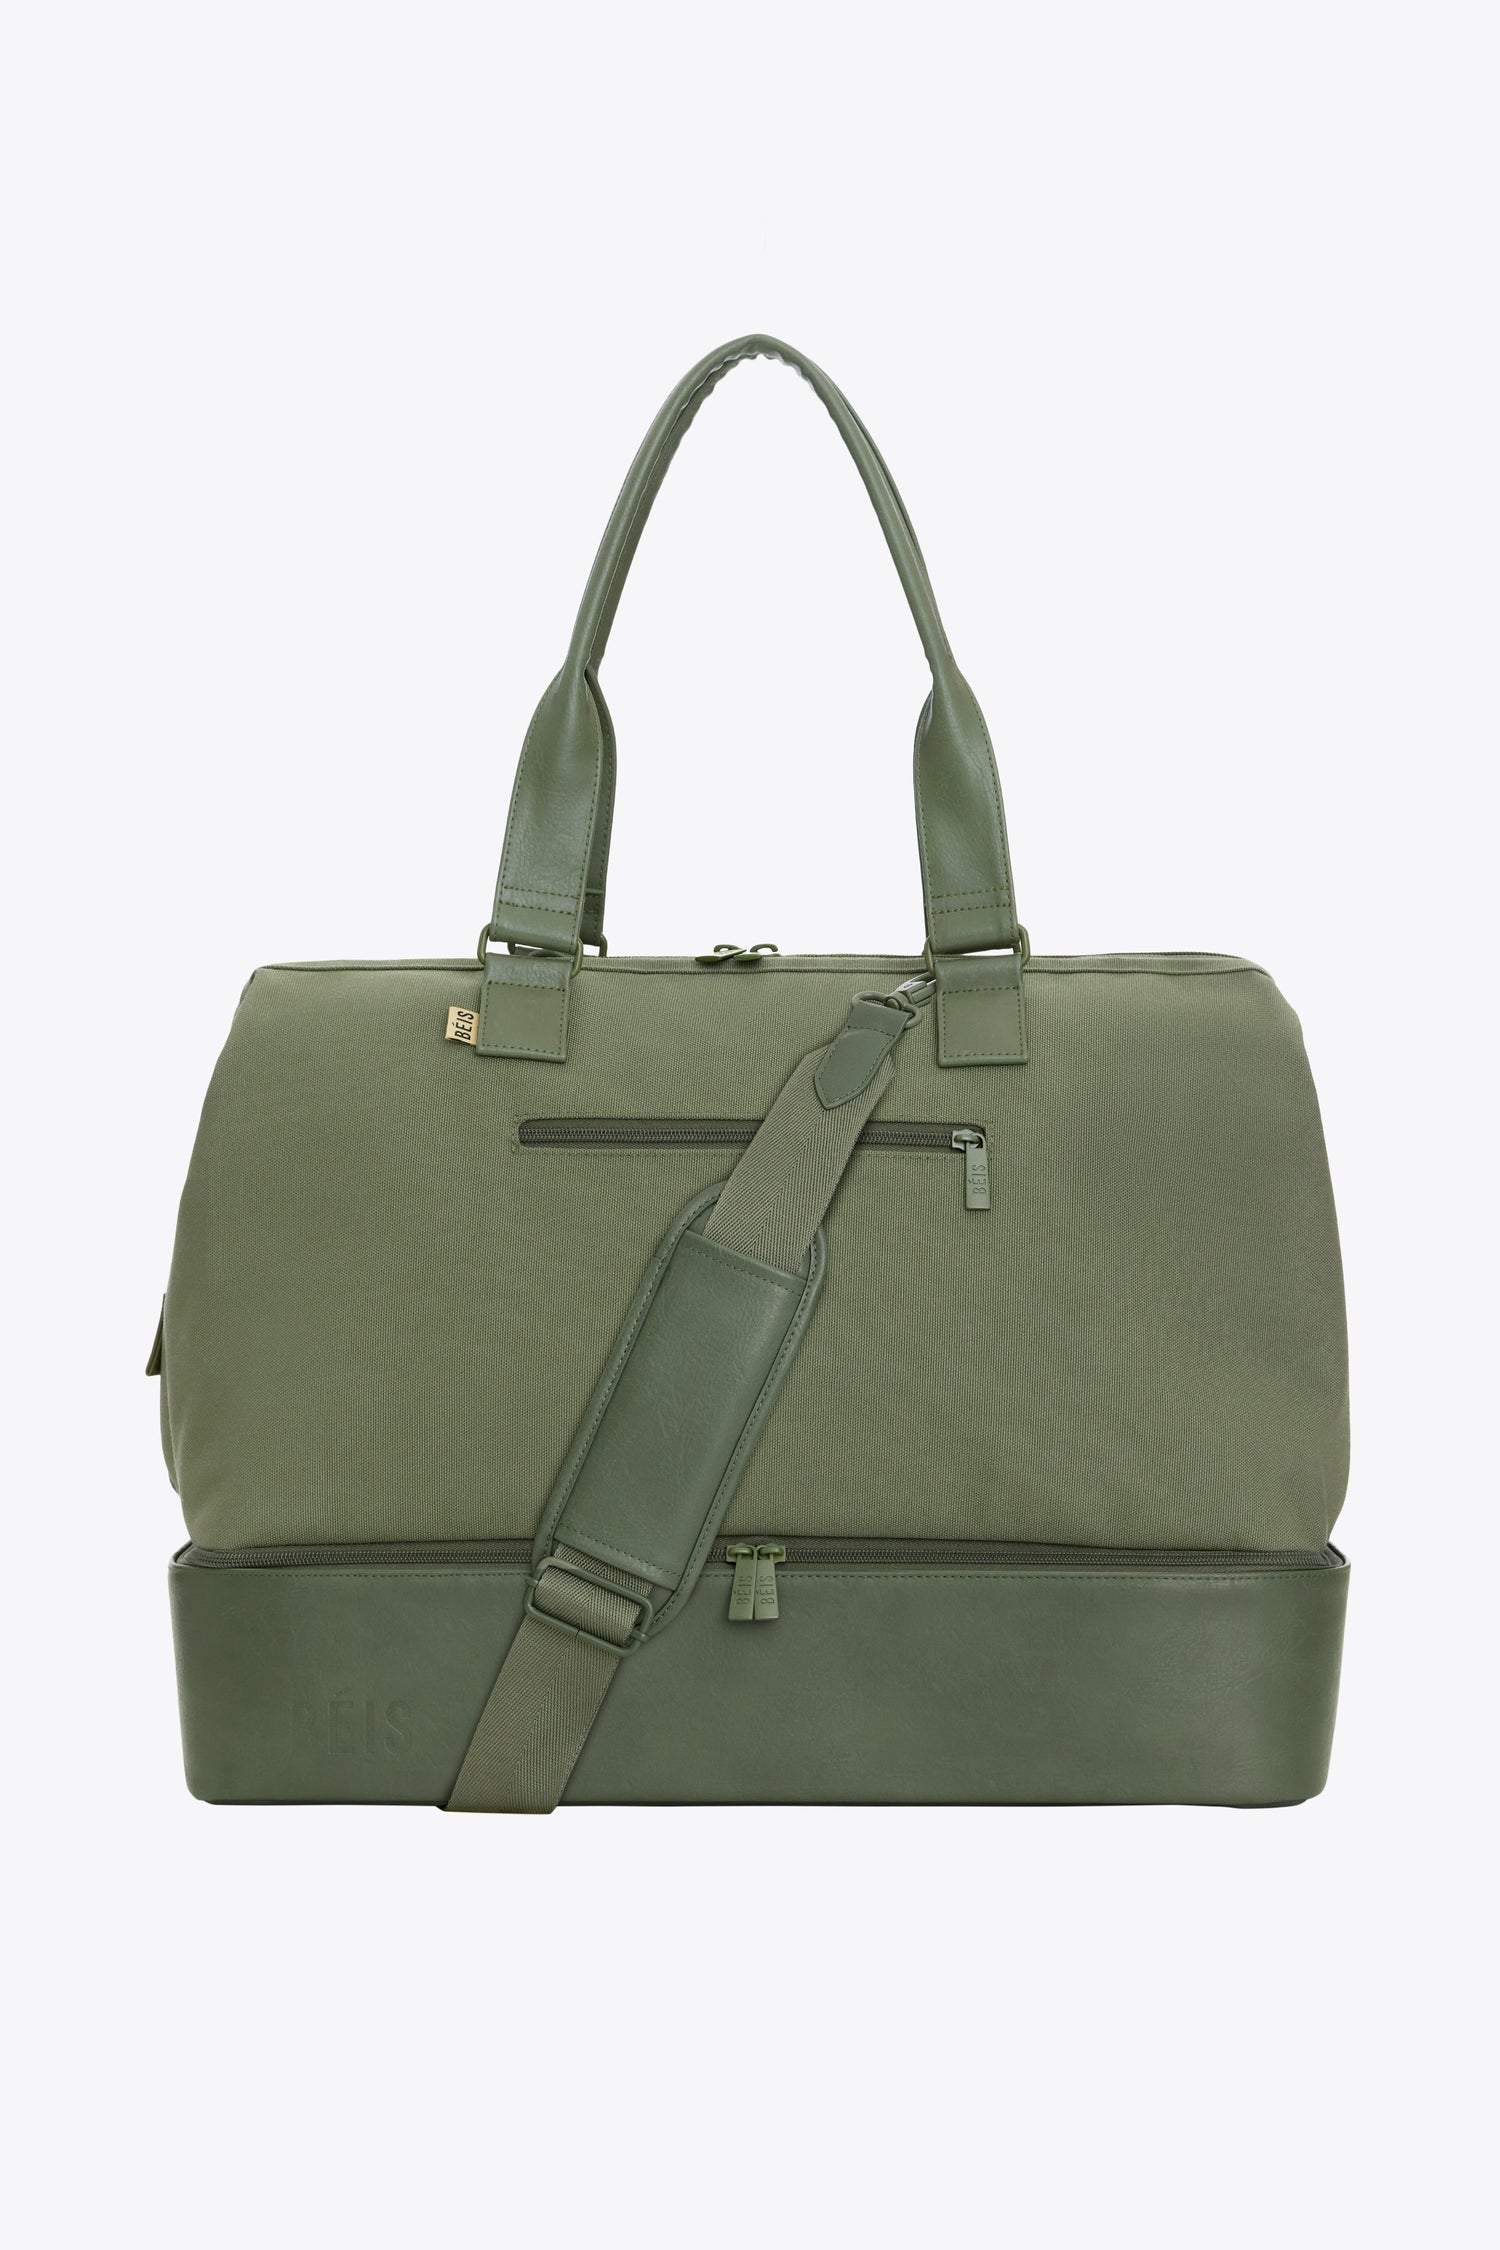 Green Travel Bags, Work Totes & Weekenders